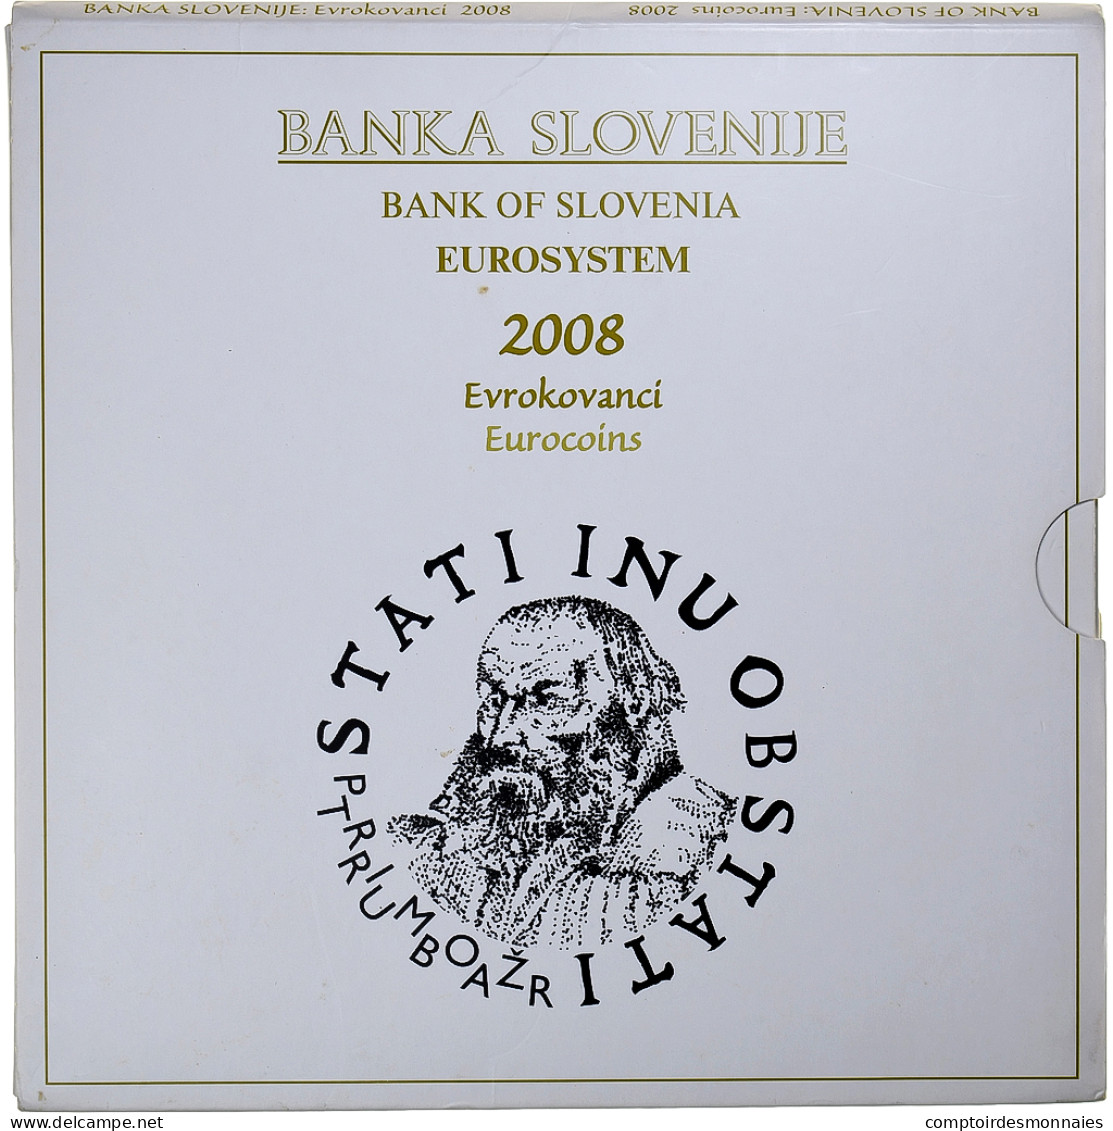 Slovénie, 1 Cent To 2 Euro + 3 Euro, FDC, 2008, FDC - Slovenia